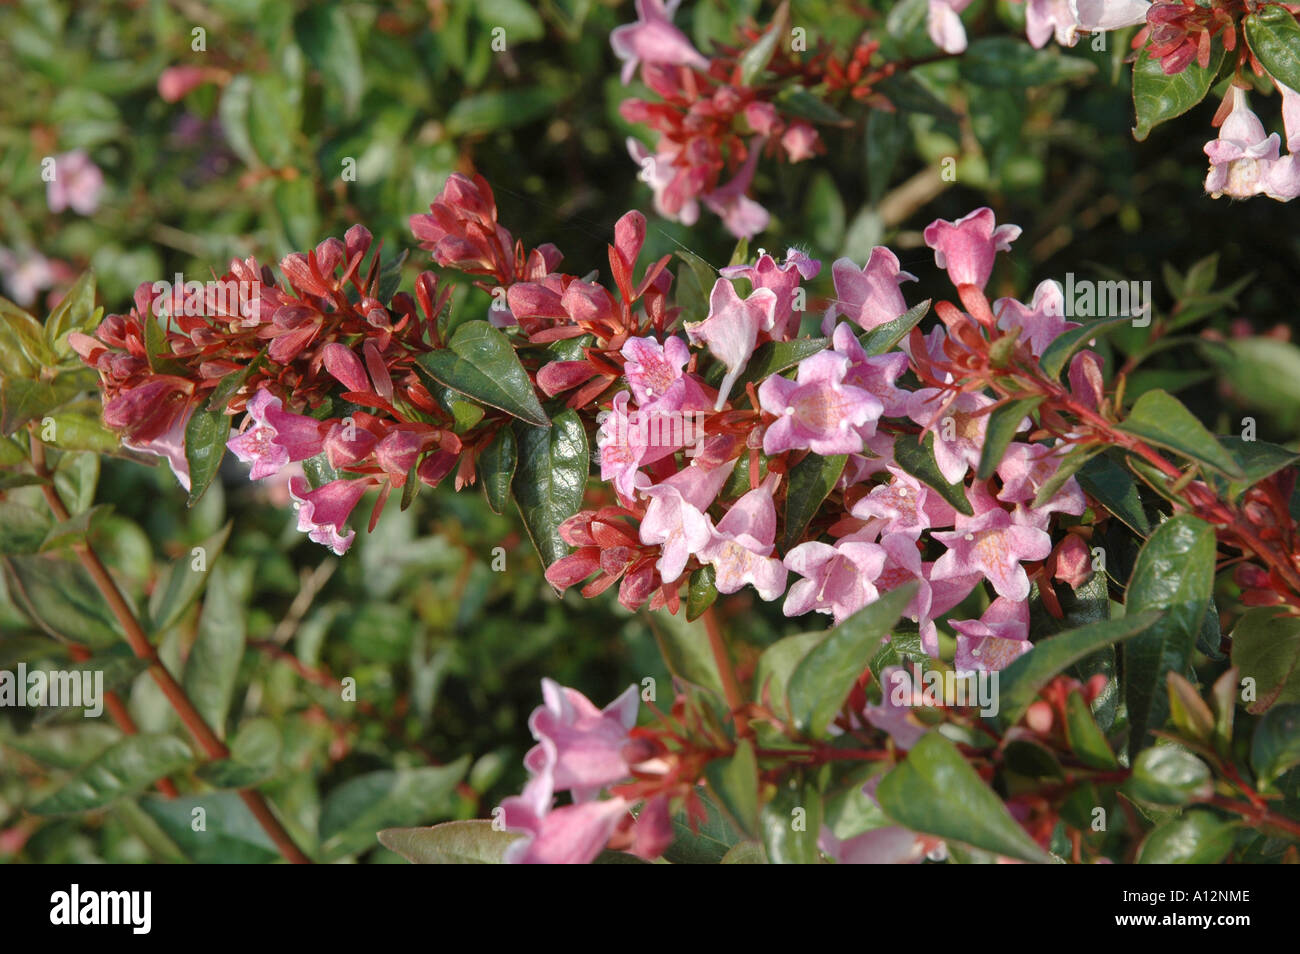 Abelia x grandiflora Schumanii Pink flowered garden evergreen shrub Stock Photo